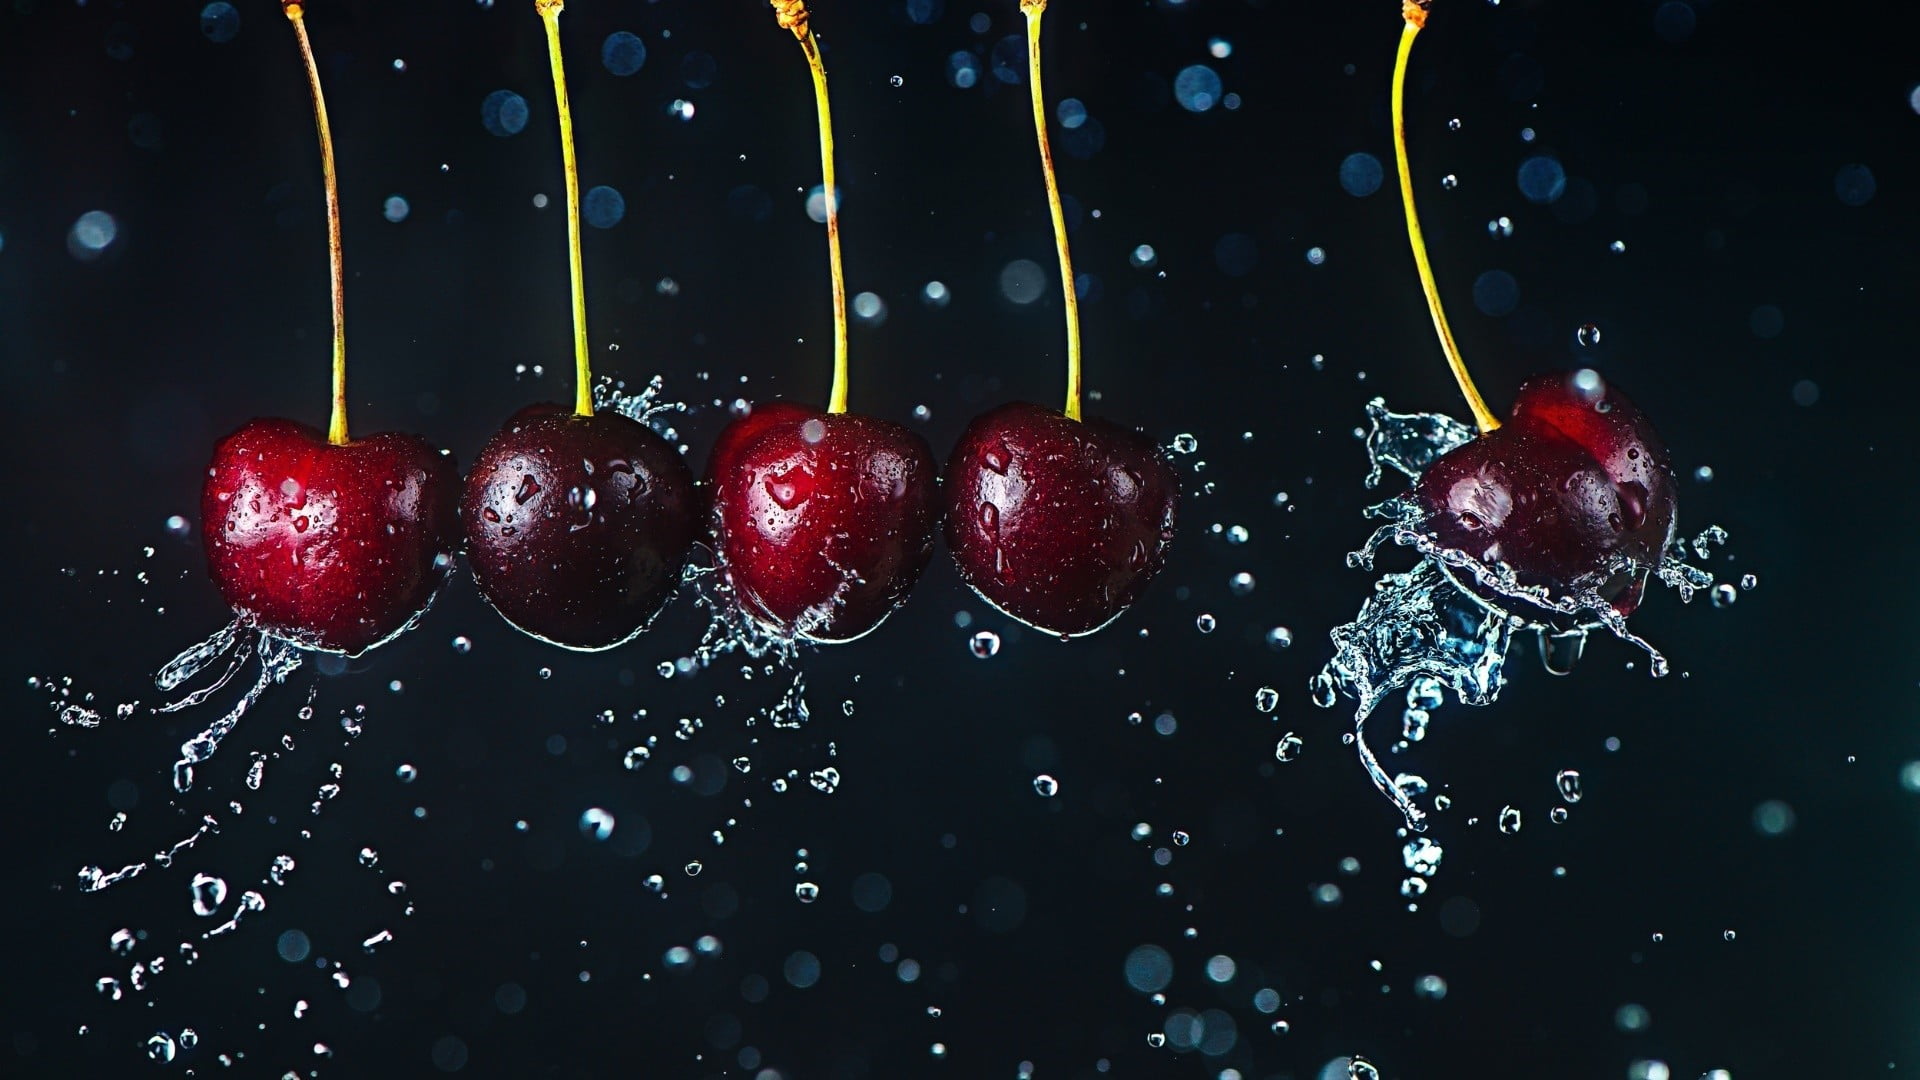 focus photography of five cherries, liquid, water, cherries, fruit